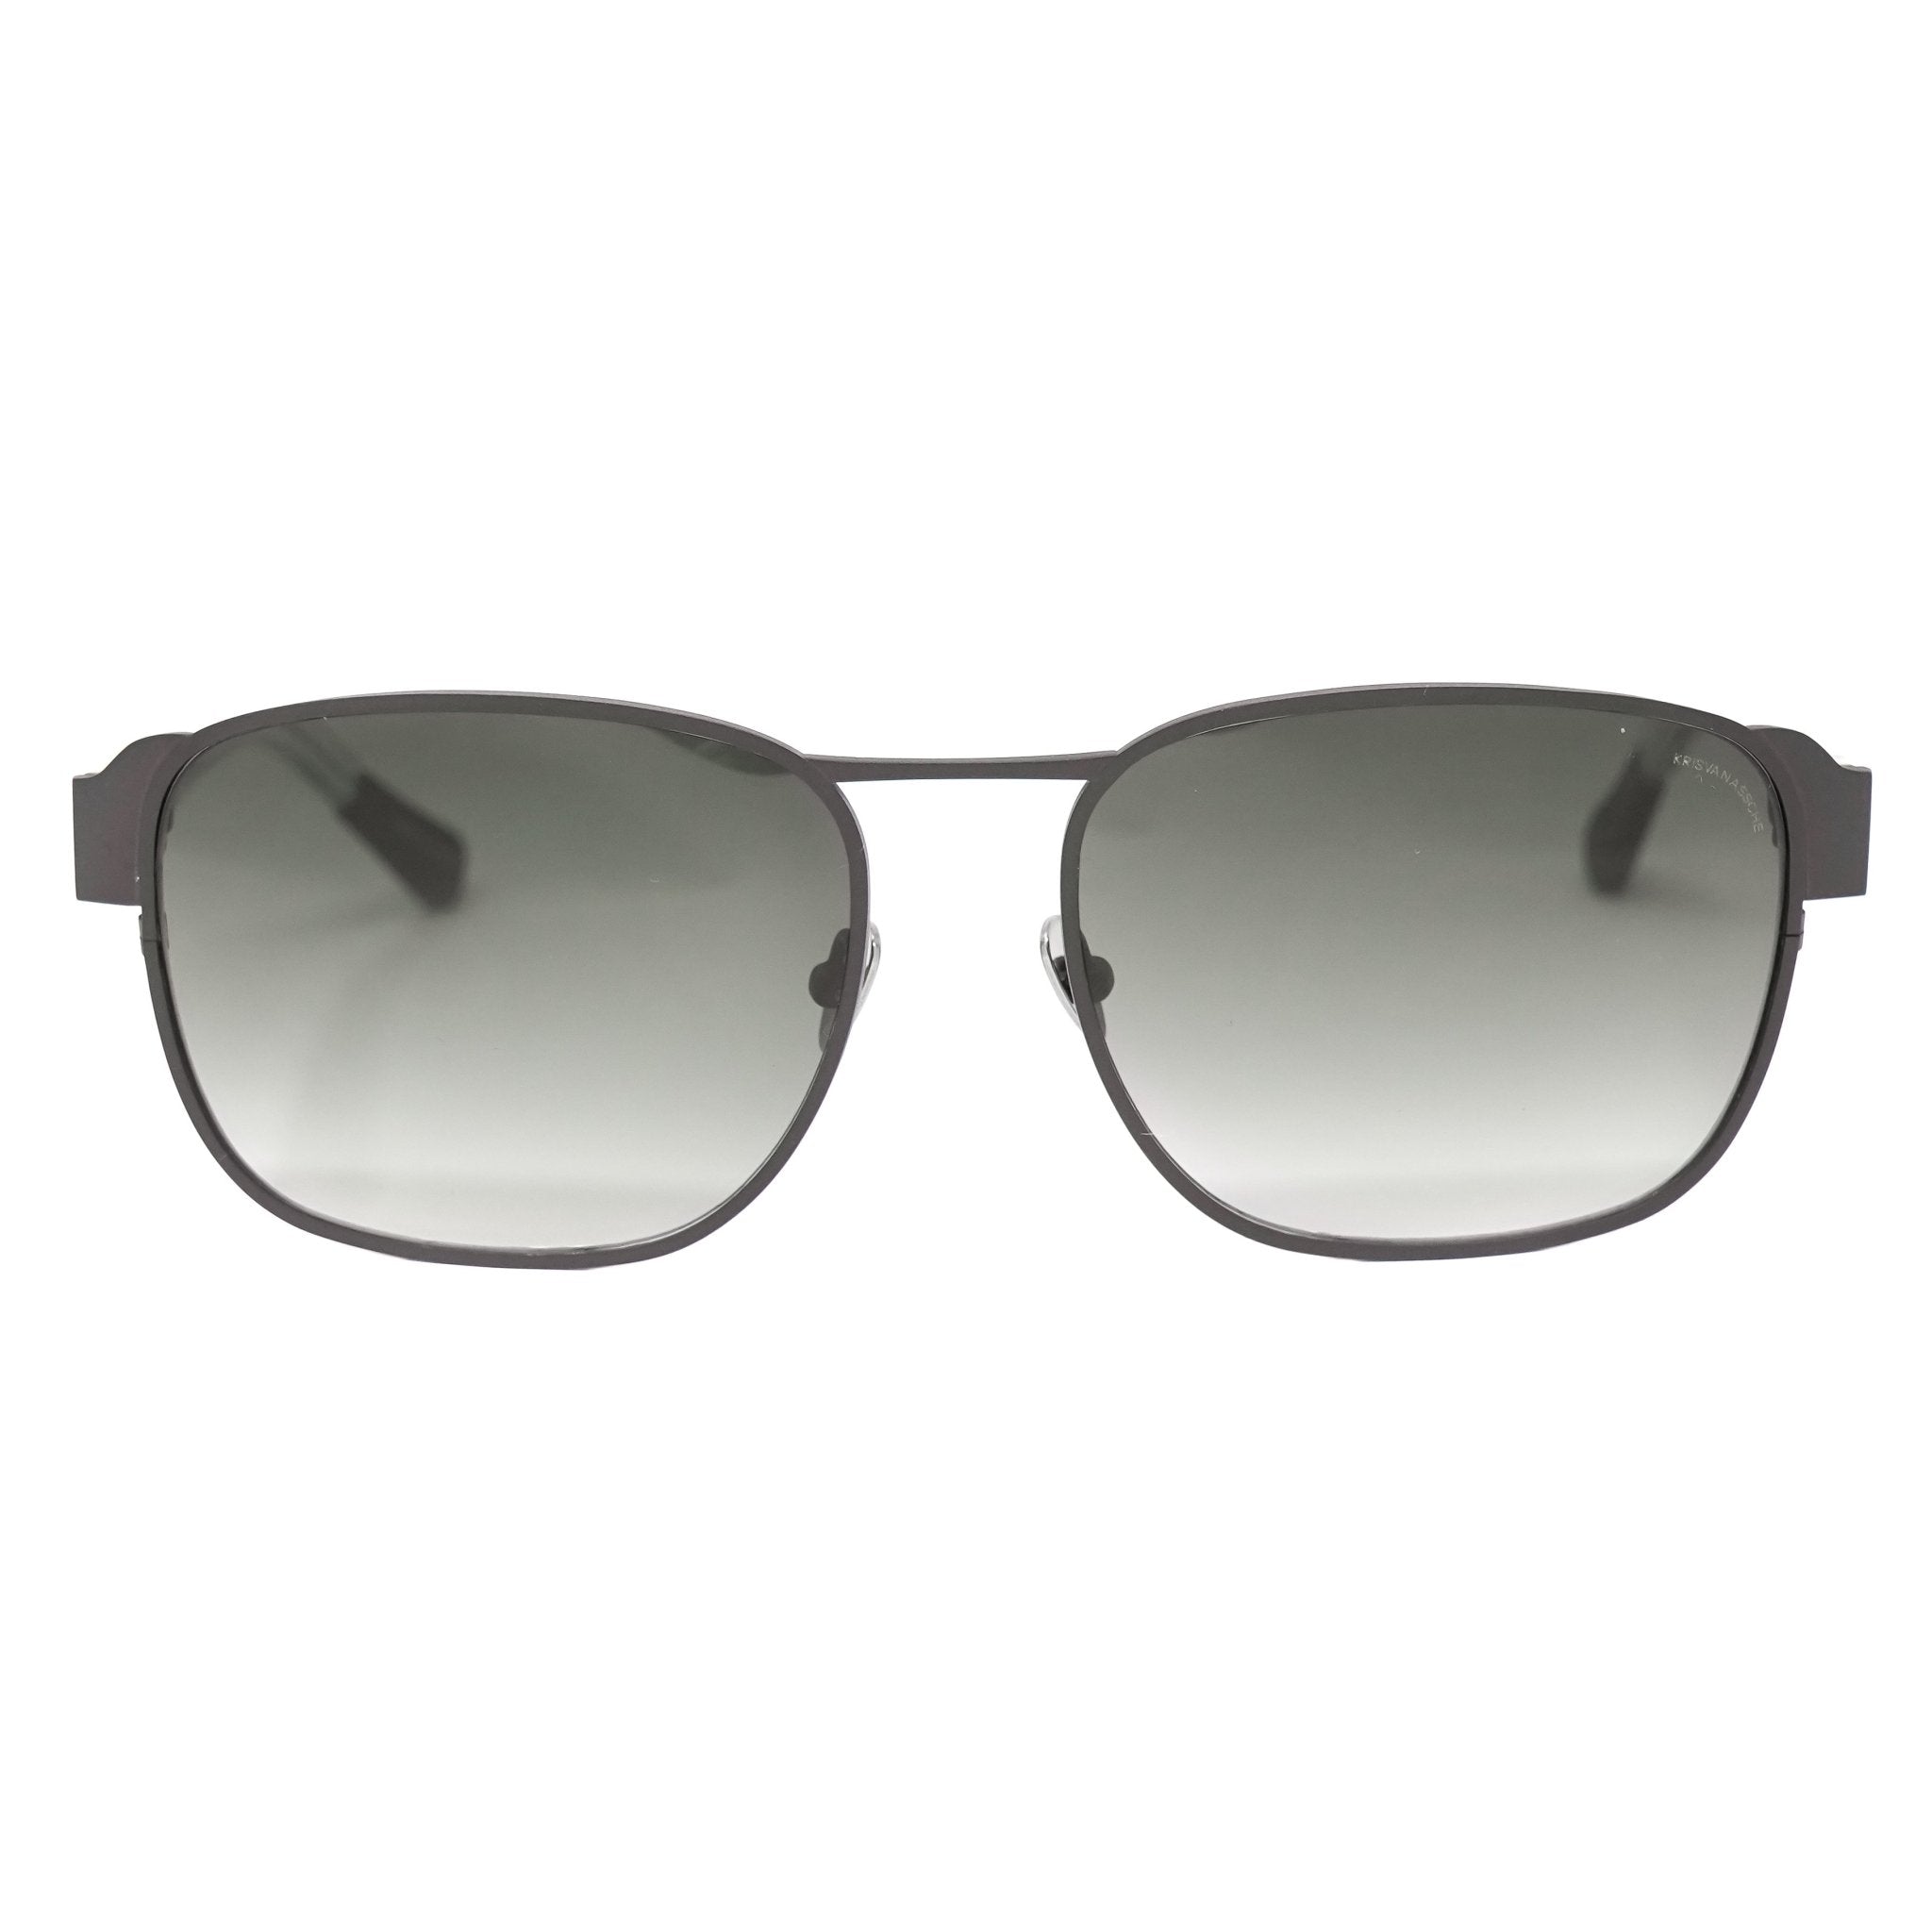 Kris Van Assche Sunglasses D-Frame Matt Brown and Grey